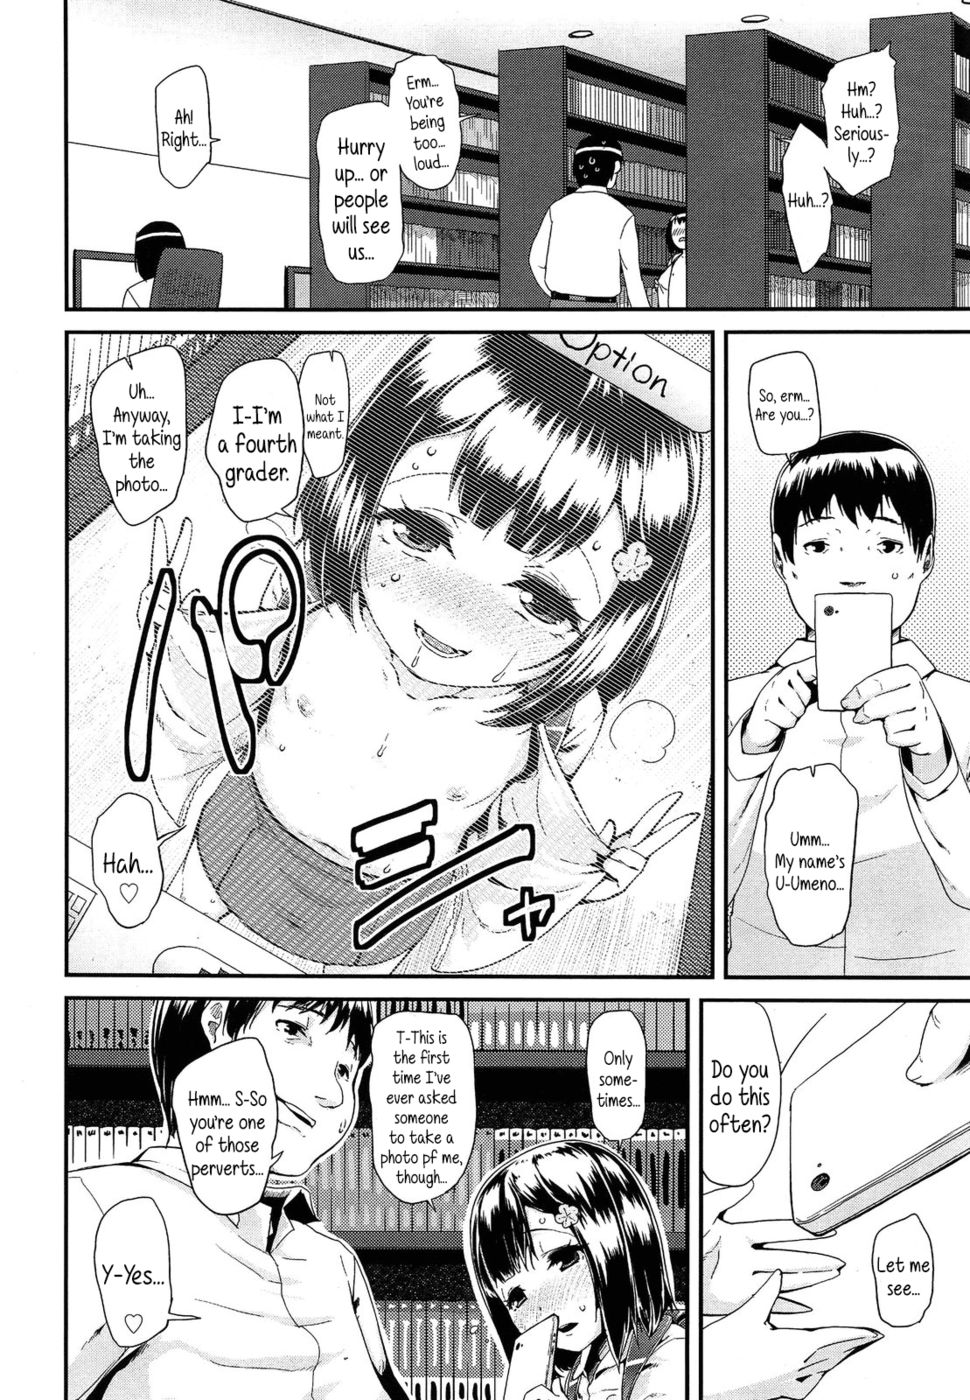 Hentai Manga Comic-Masturbating-Chapter 1 - 2 - 3 - 4 - 5-2